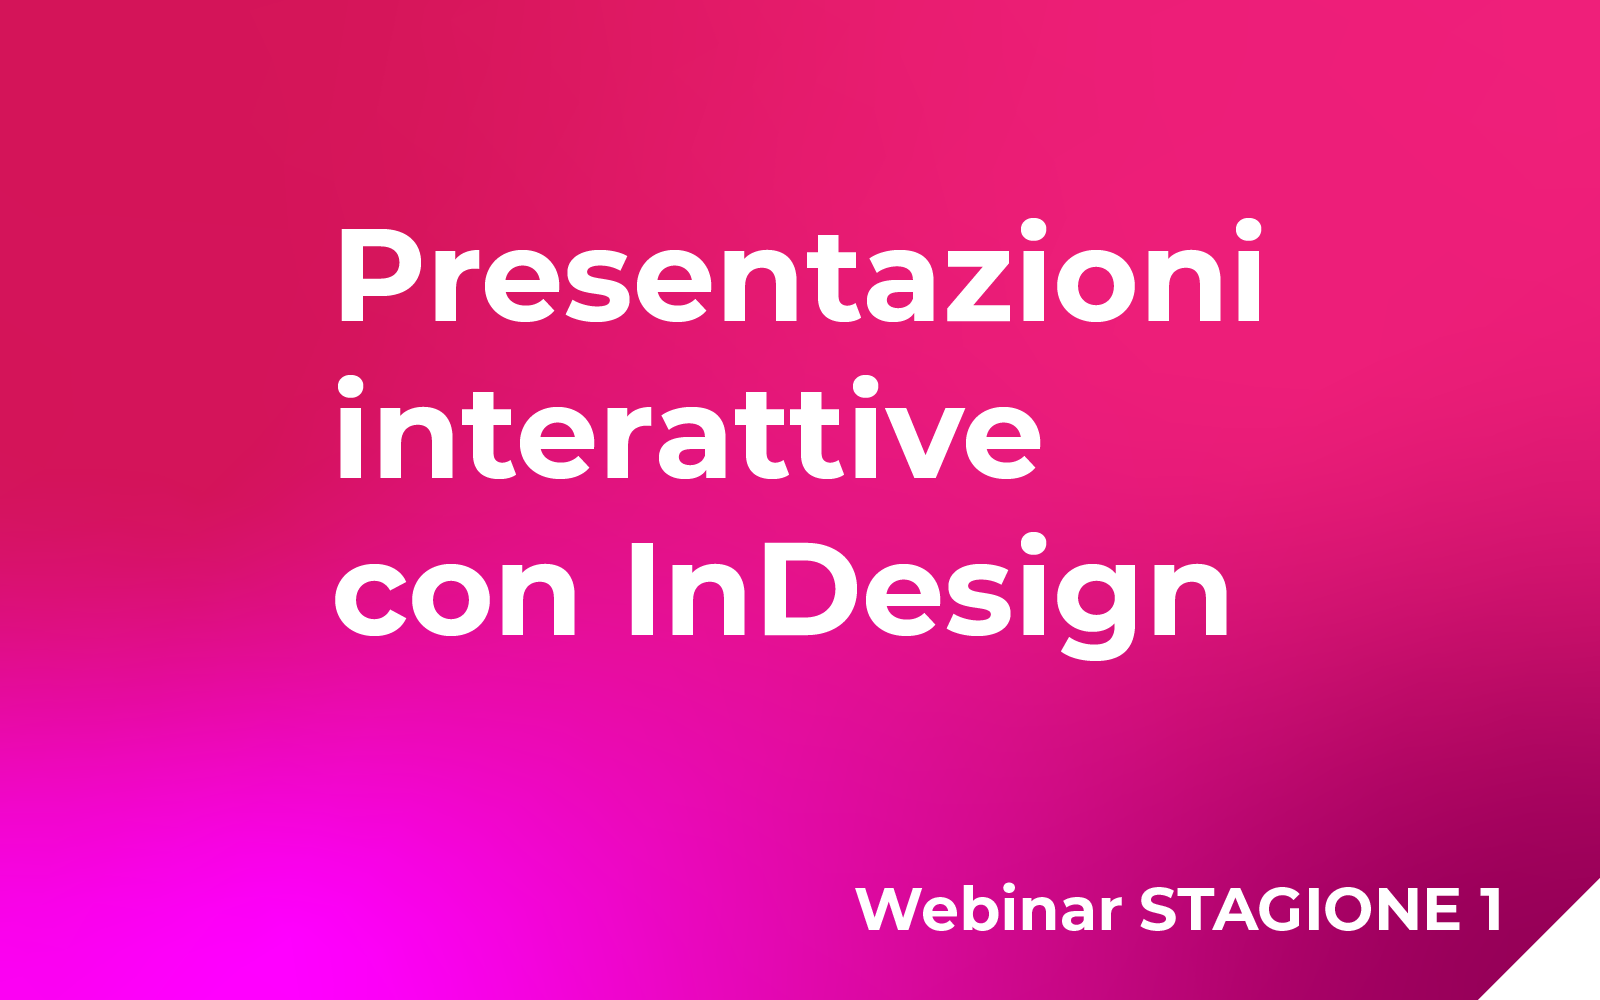 Crea presentazioni interattive con Indesign